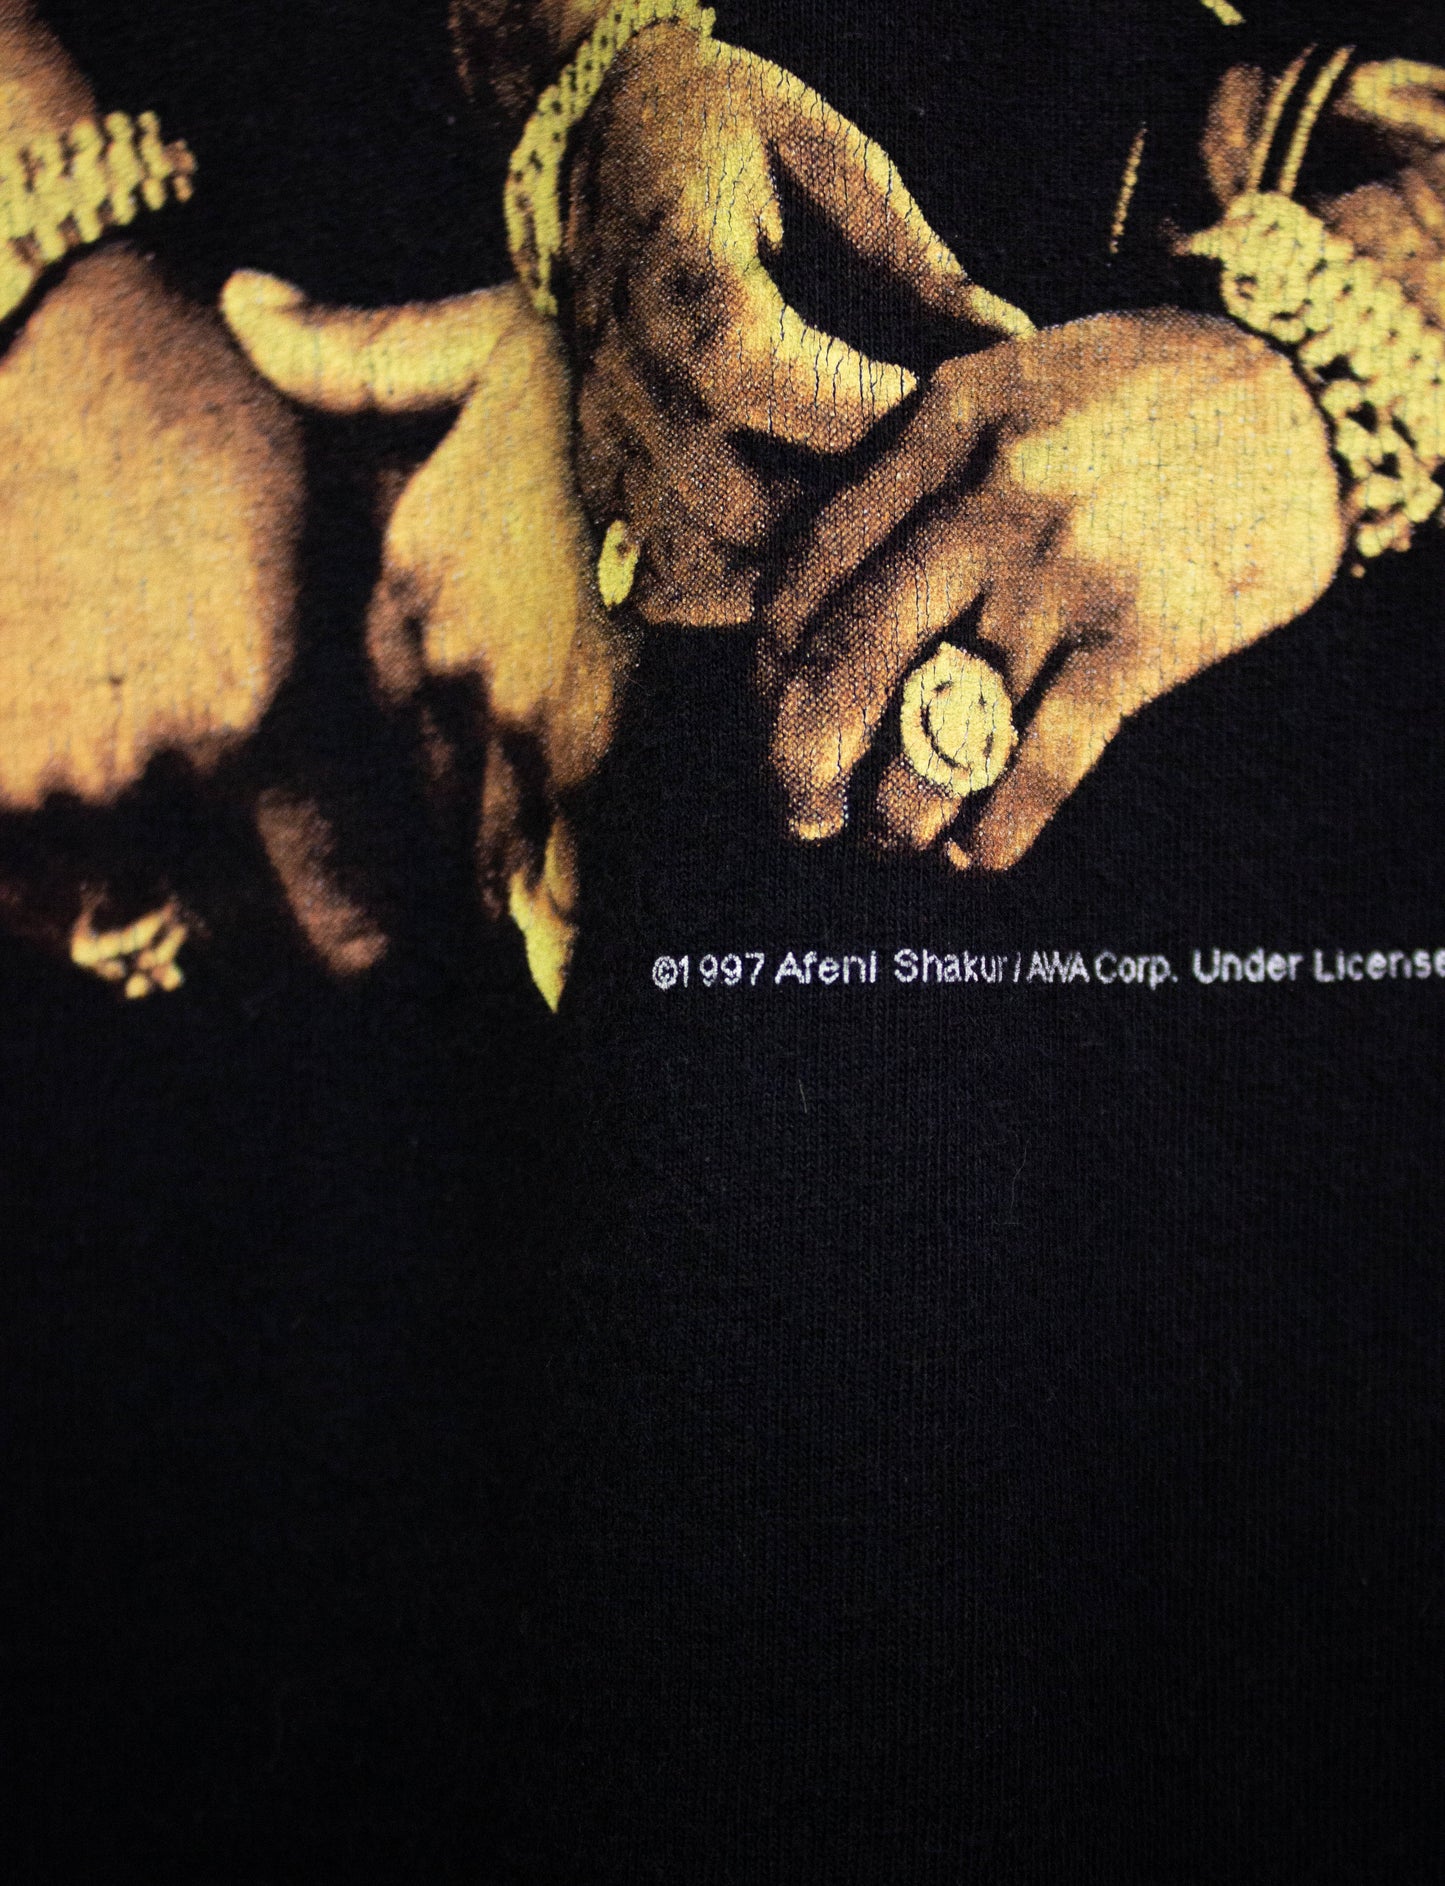 Vintage 2pac 1997 Stop The Violence Rap T Shirt Black XL